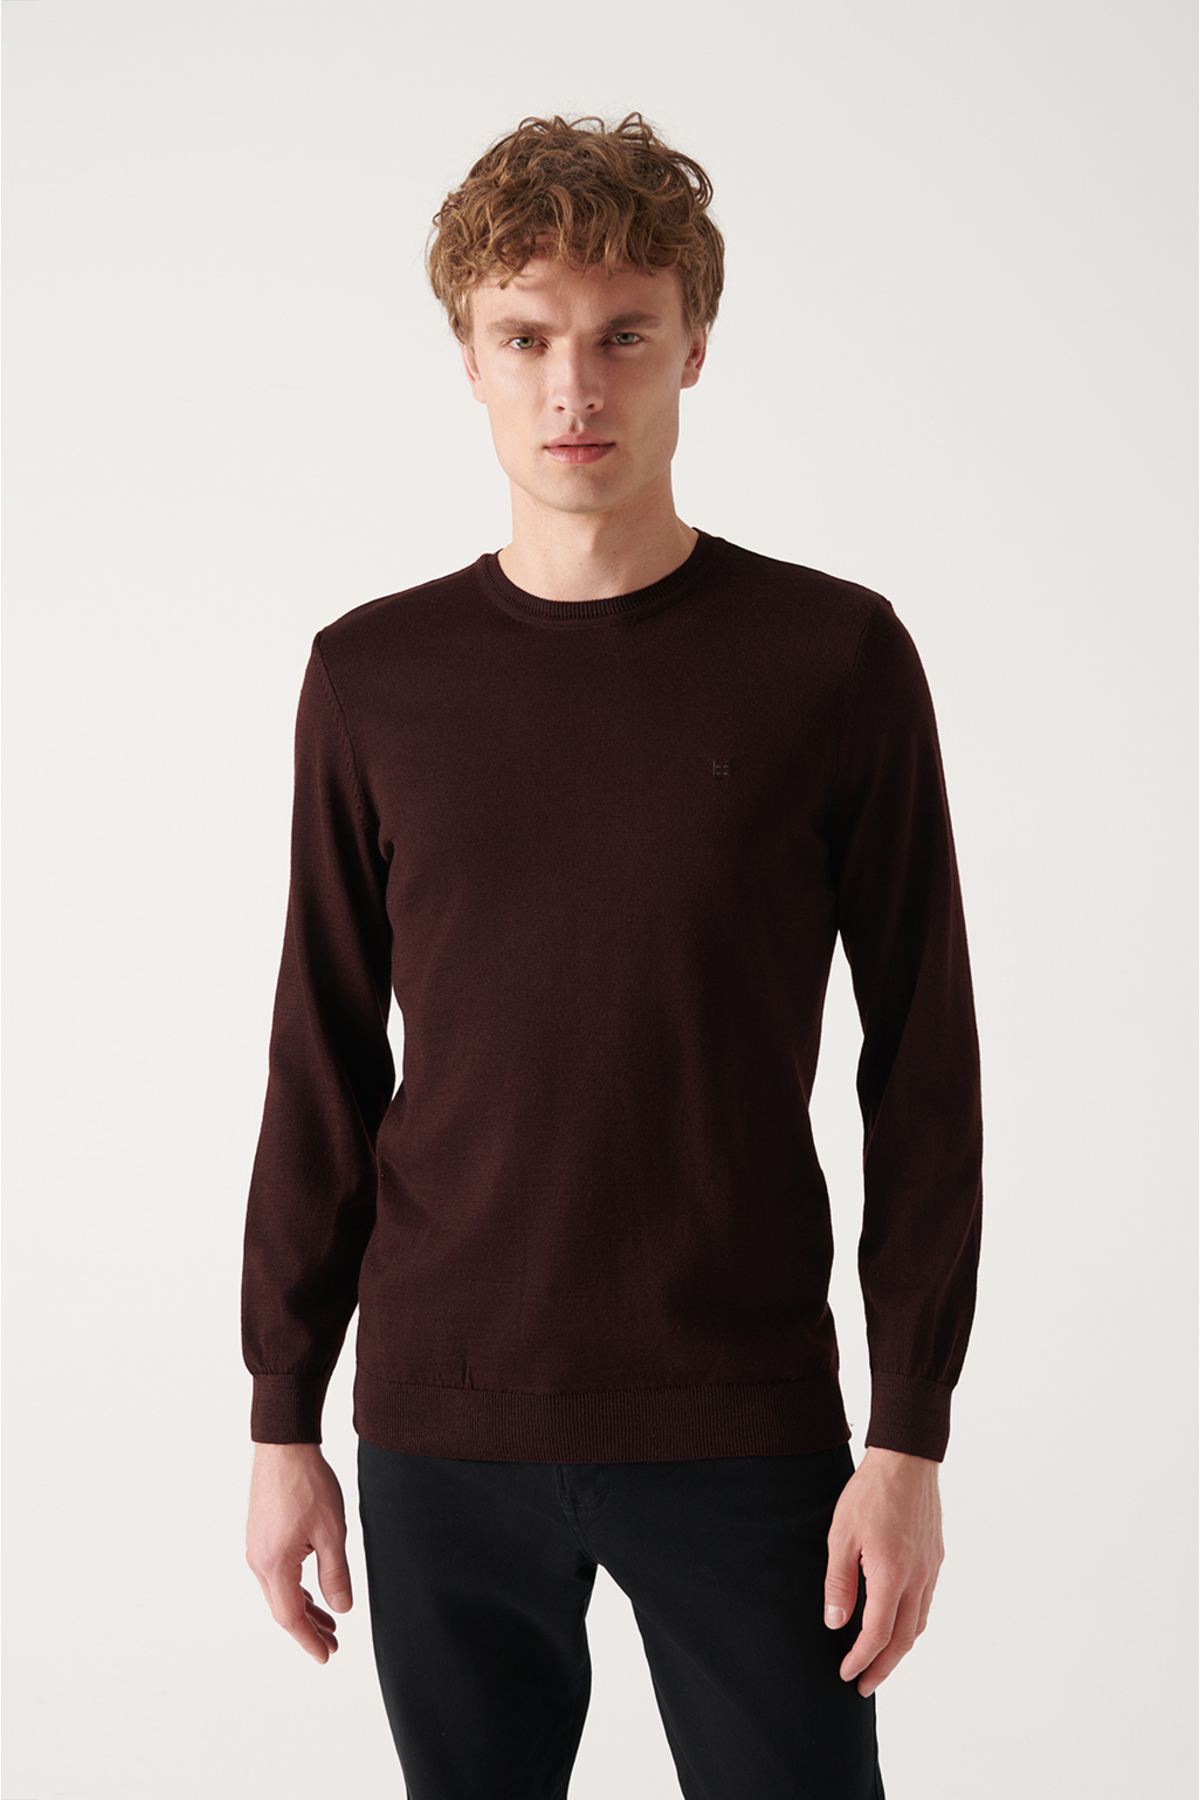 Avva Men's Burgundy Crew Neck Wool Blended Standard Fit Normal Cut Knitwear Sweater